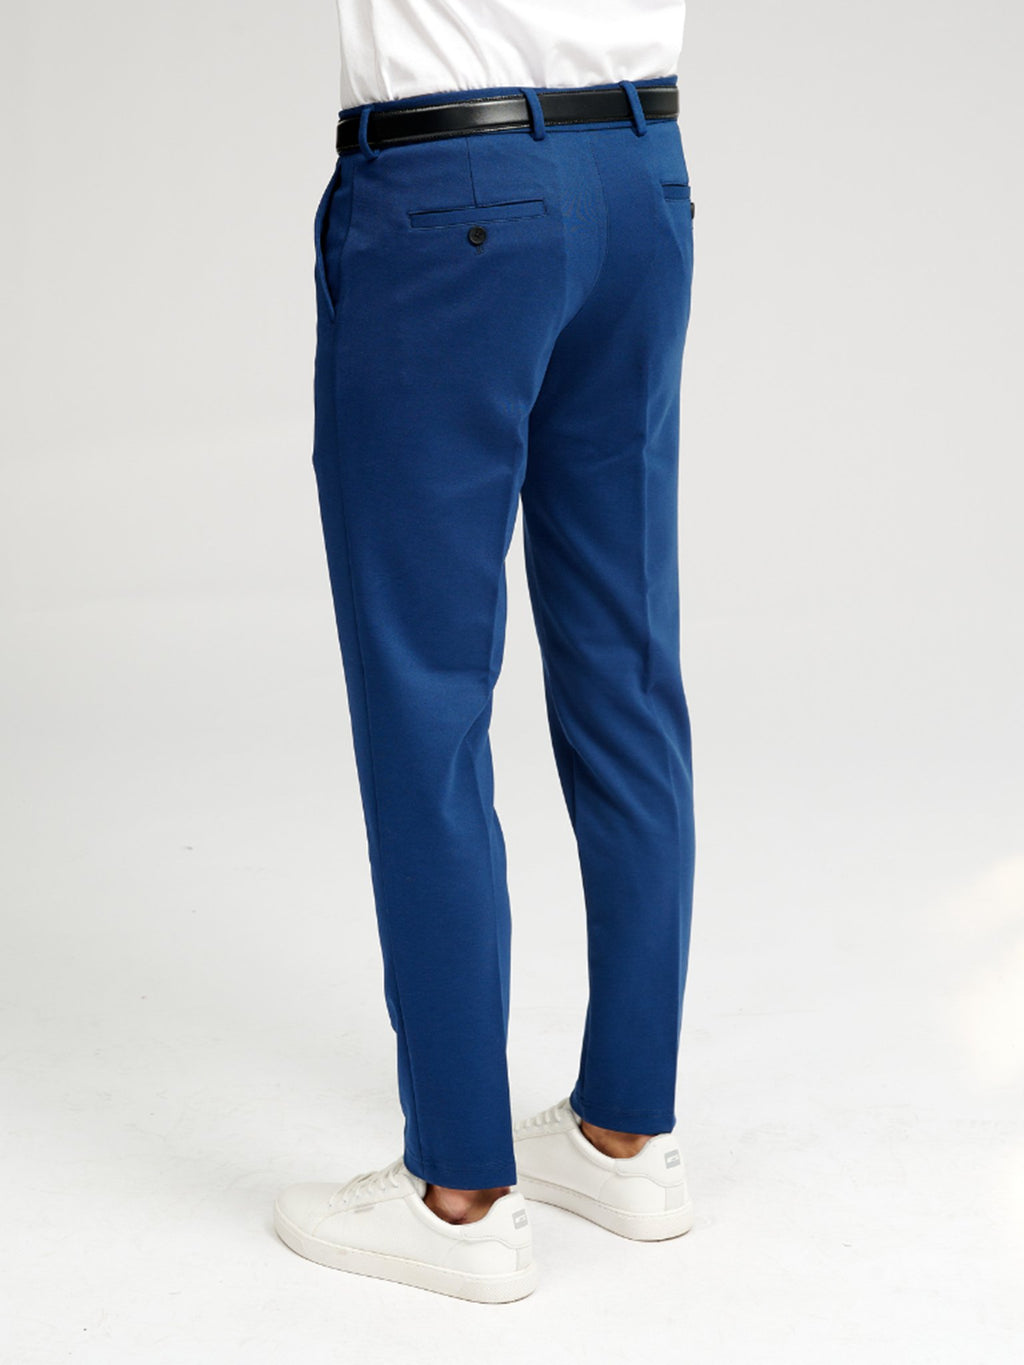 原始性能裤子 - 蓝色